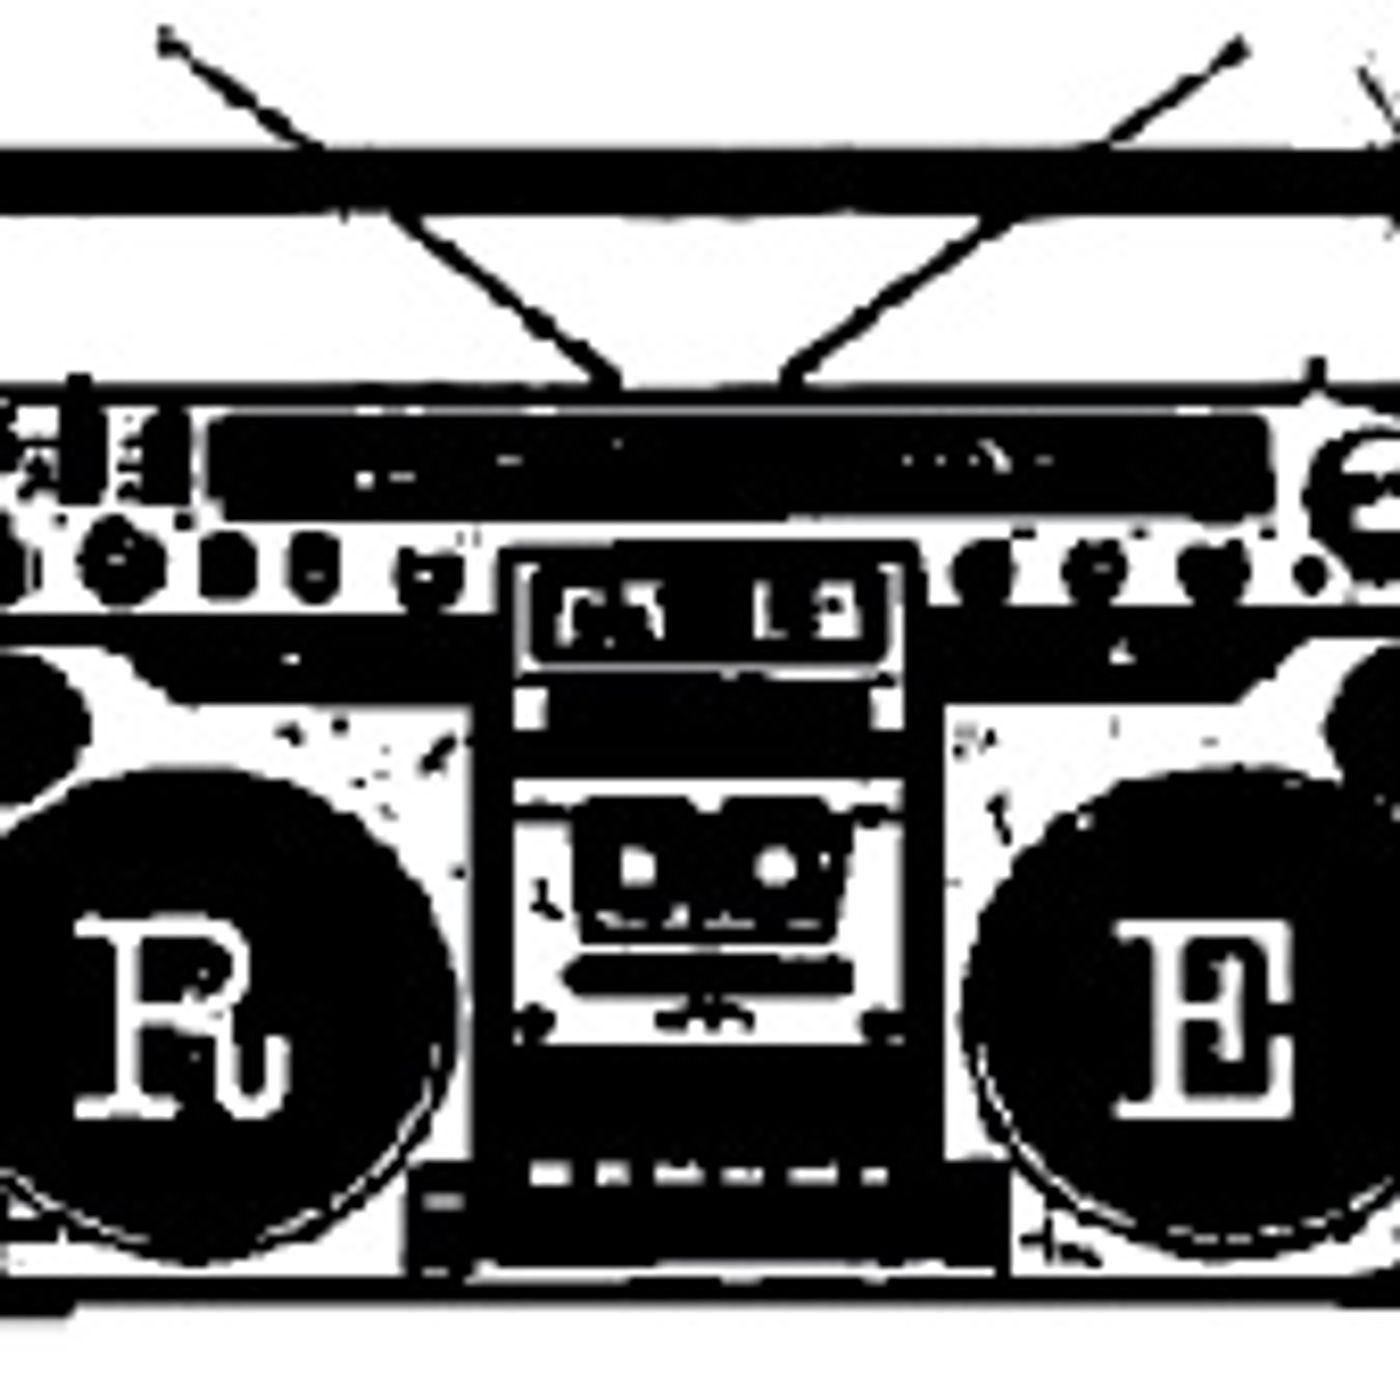 RE: Radio